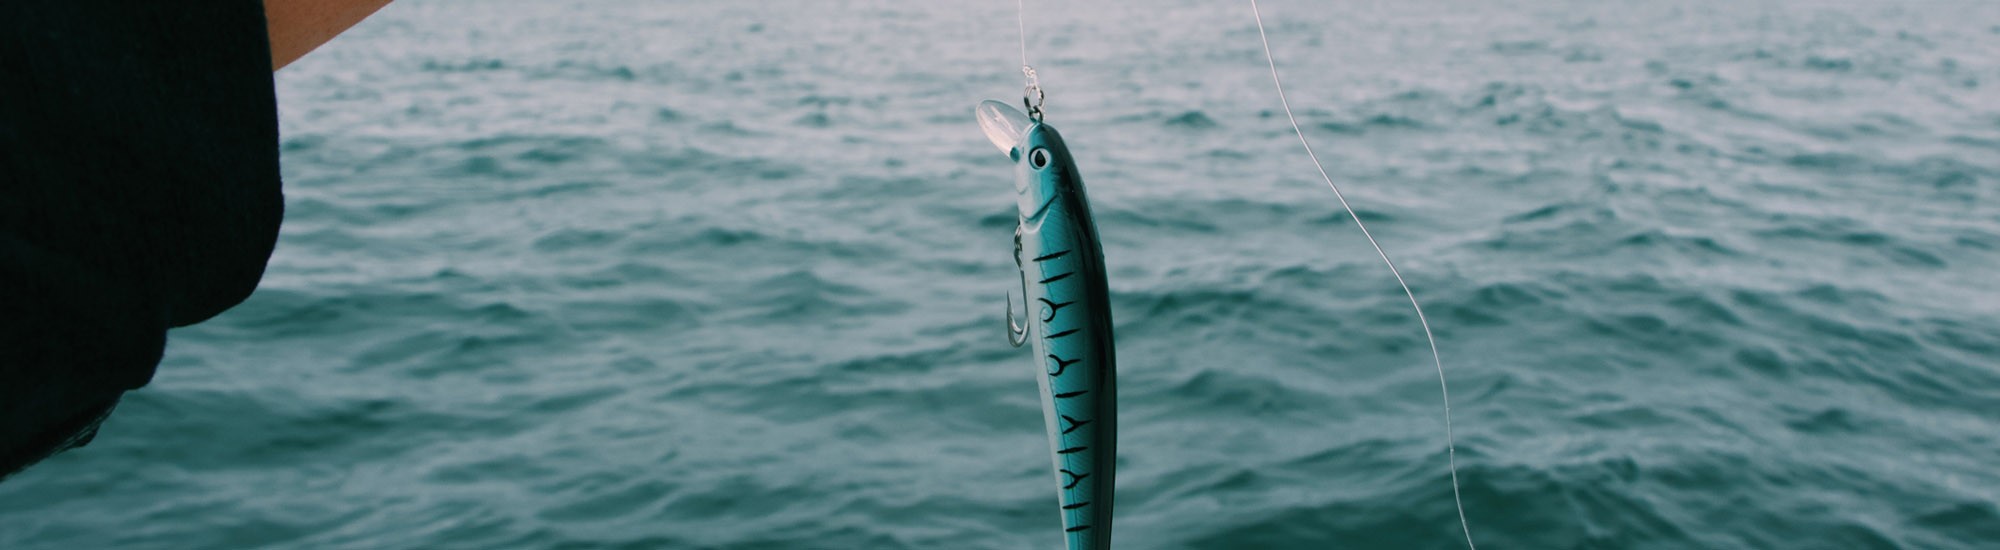 La pesca del Black Bass es una modalidad de pesca de las más emocionantes. Desde nuestra tienda online te ofrecemos los mejores productos